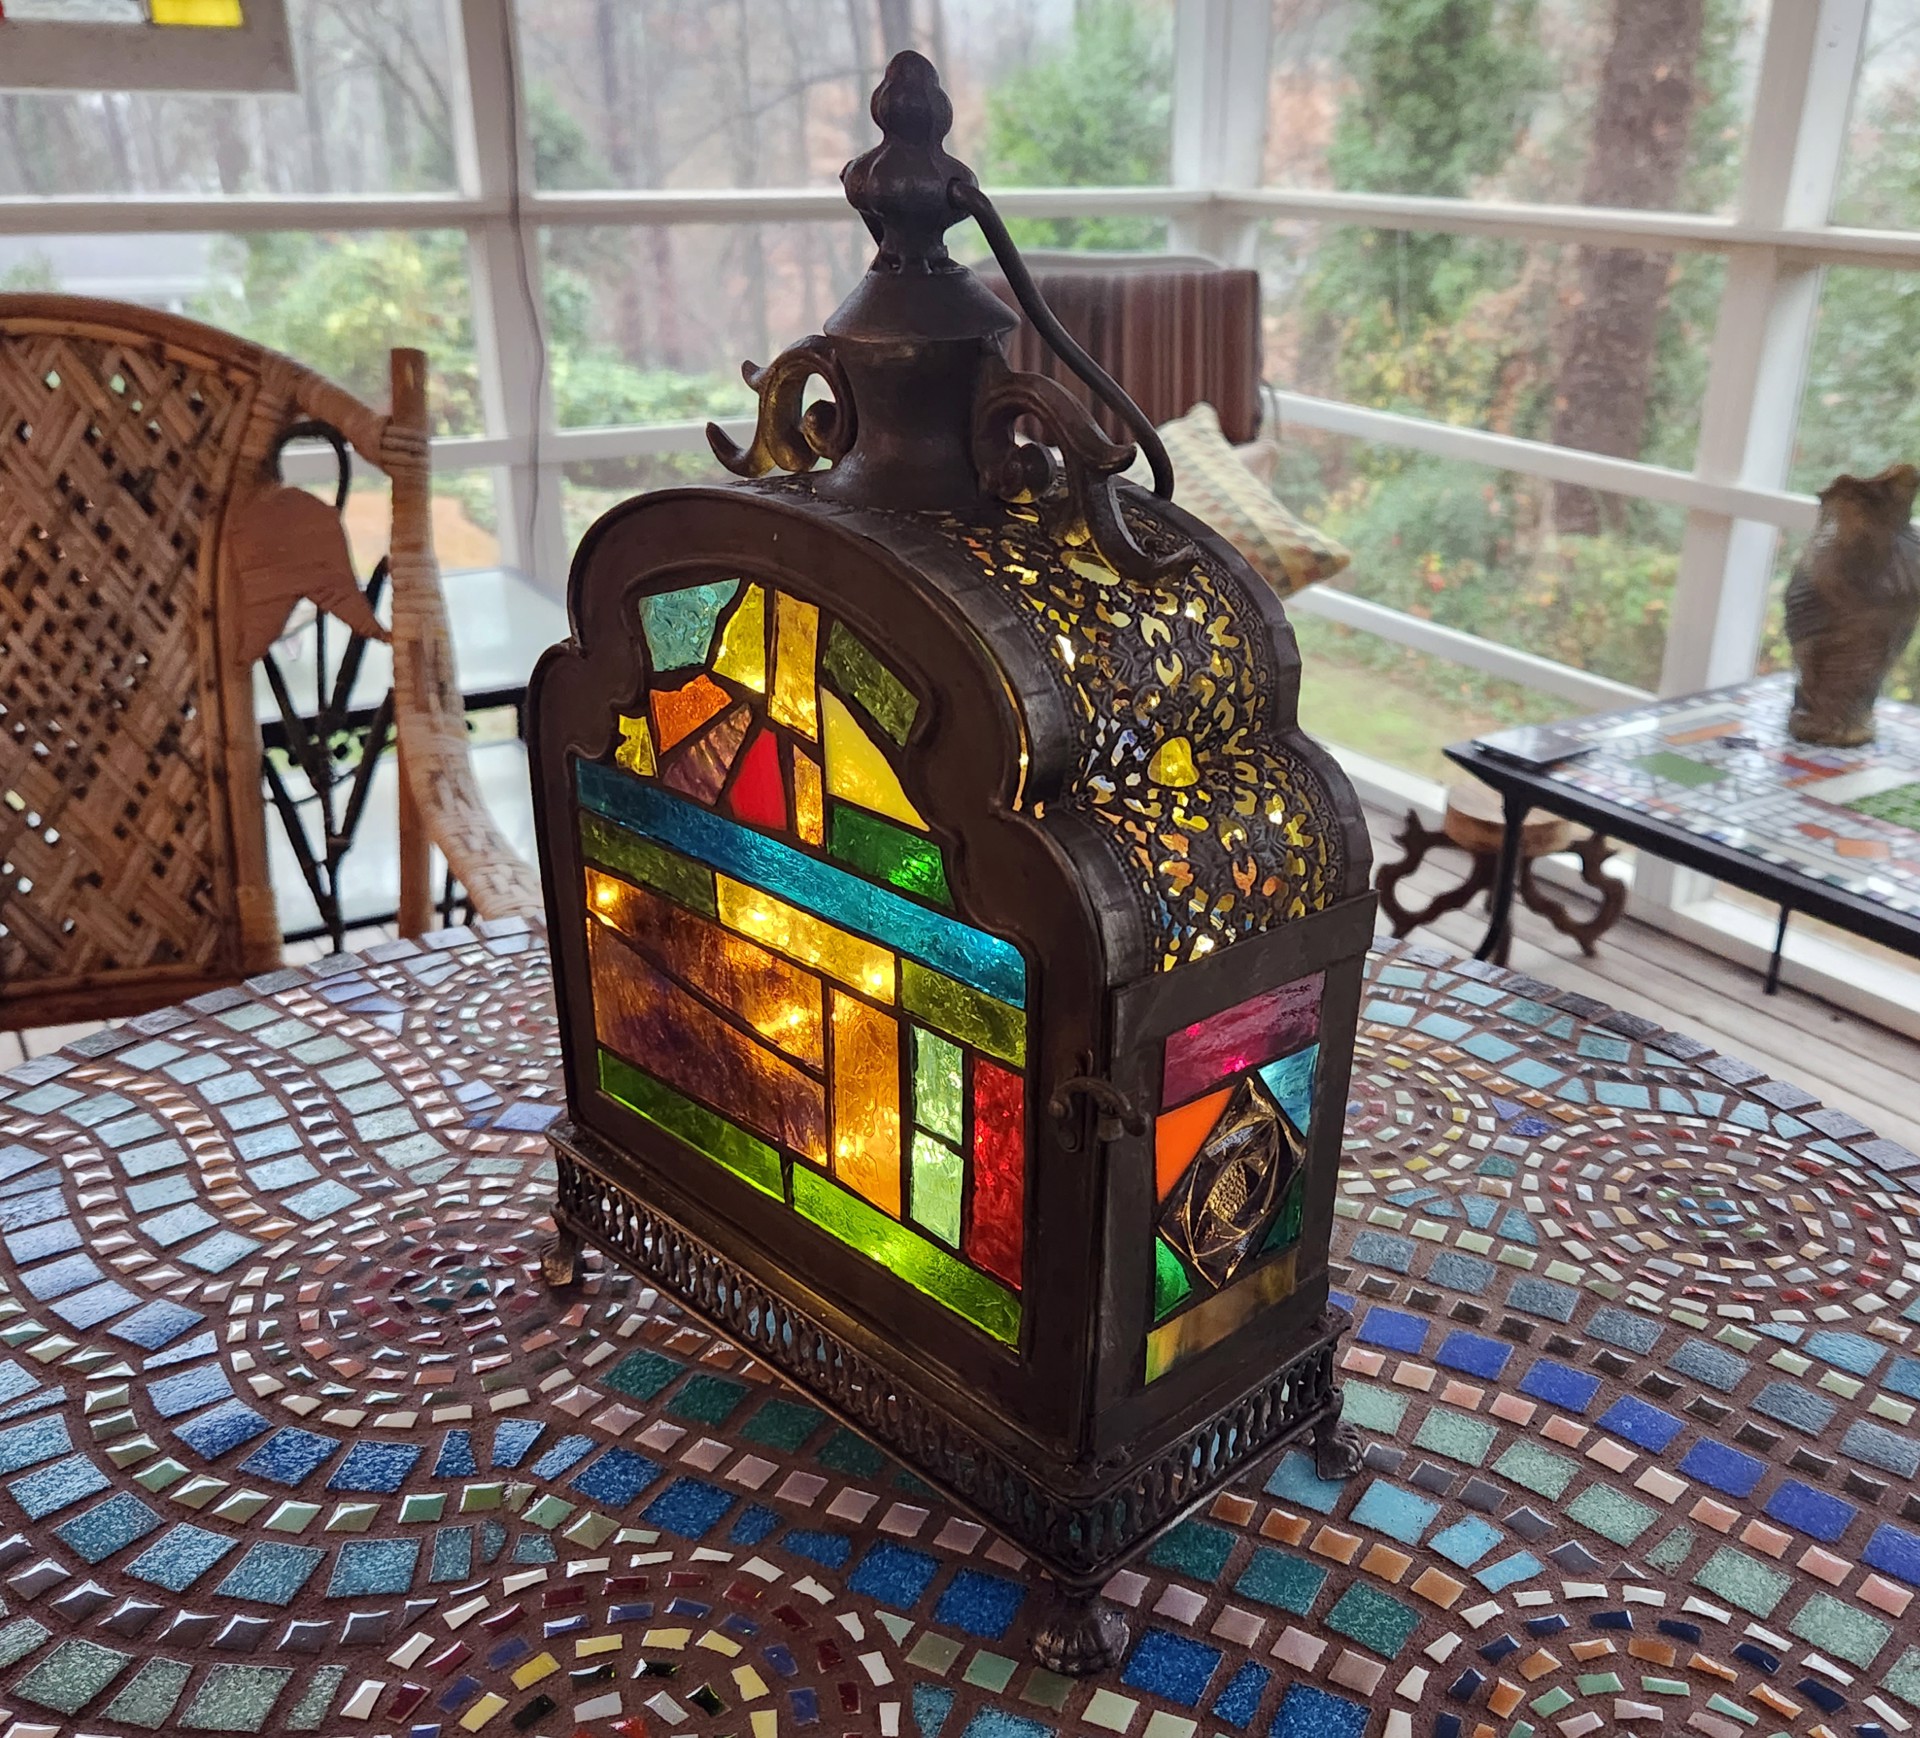 Victorian Mosaic Lantern by Carol Reynolds